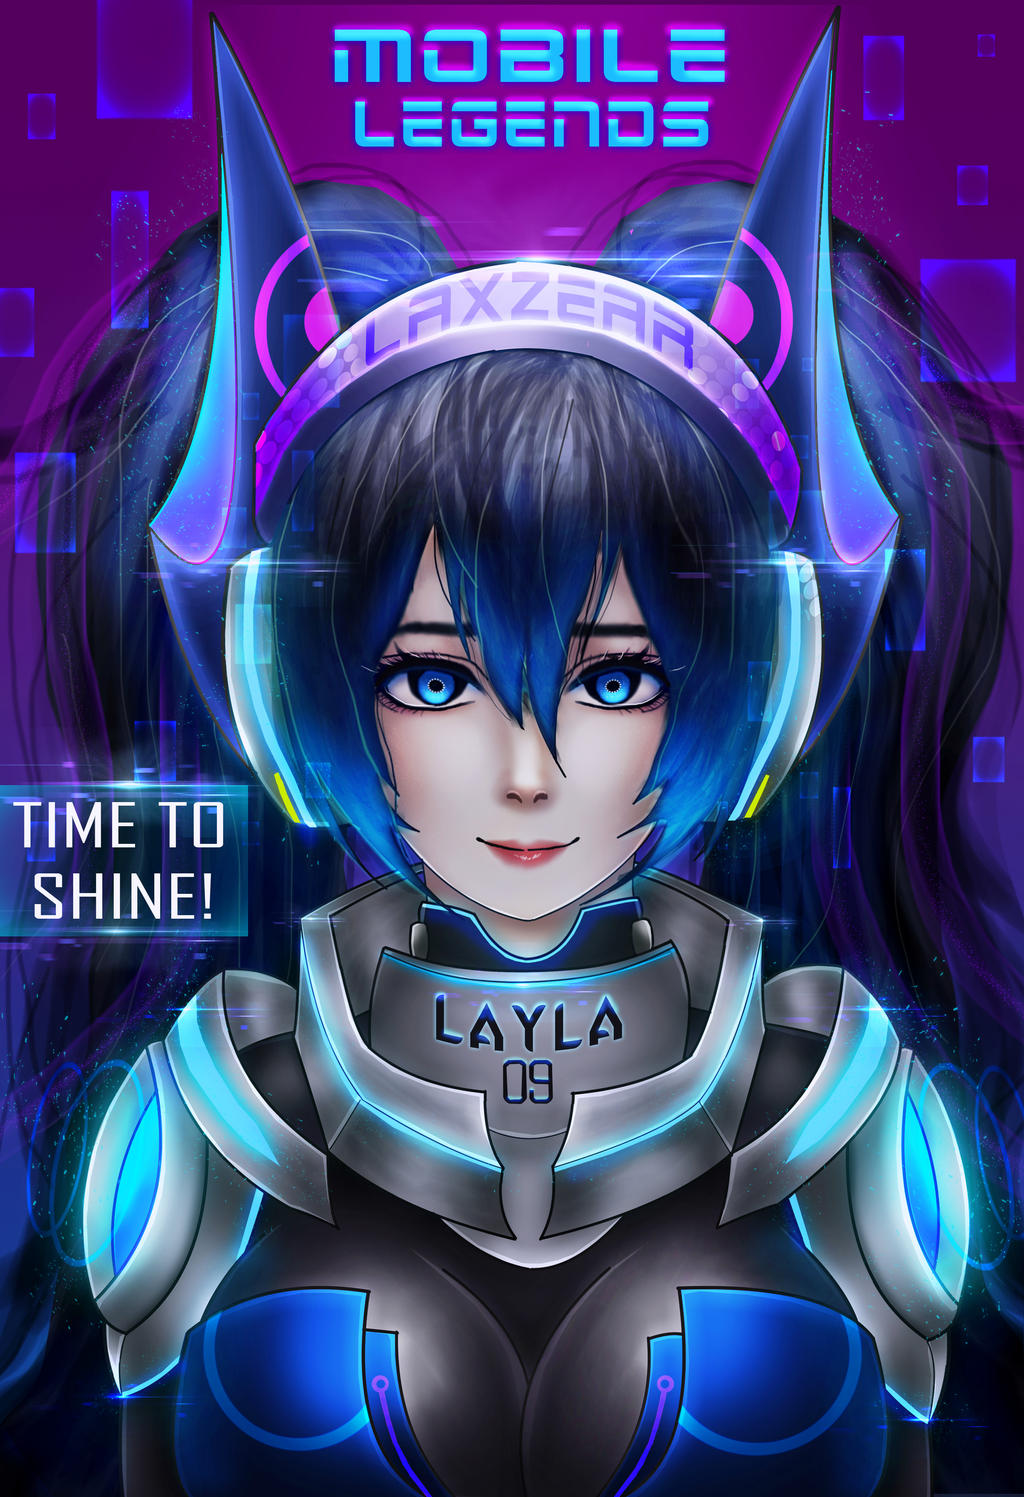 Layla ( Mobile Legends ) by Laxzear on DeviantArt